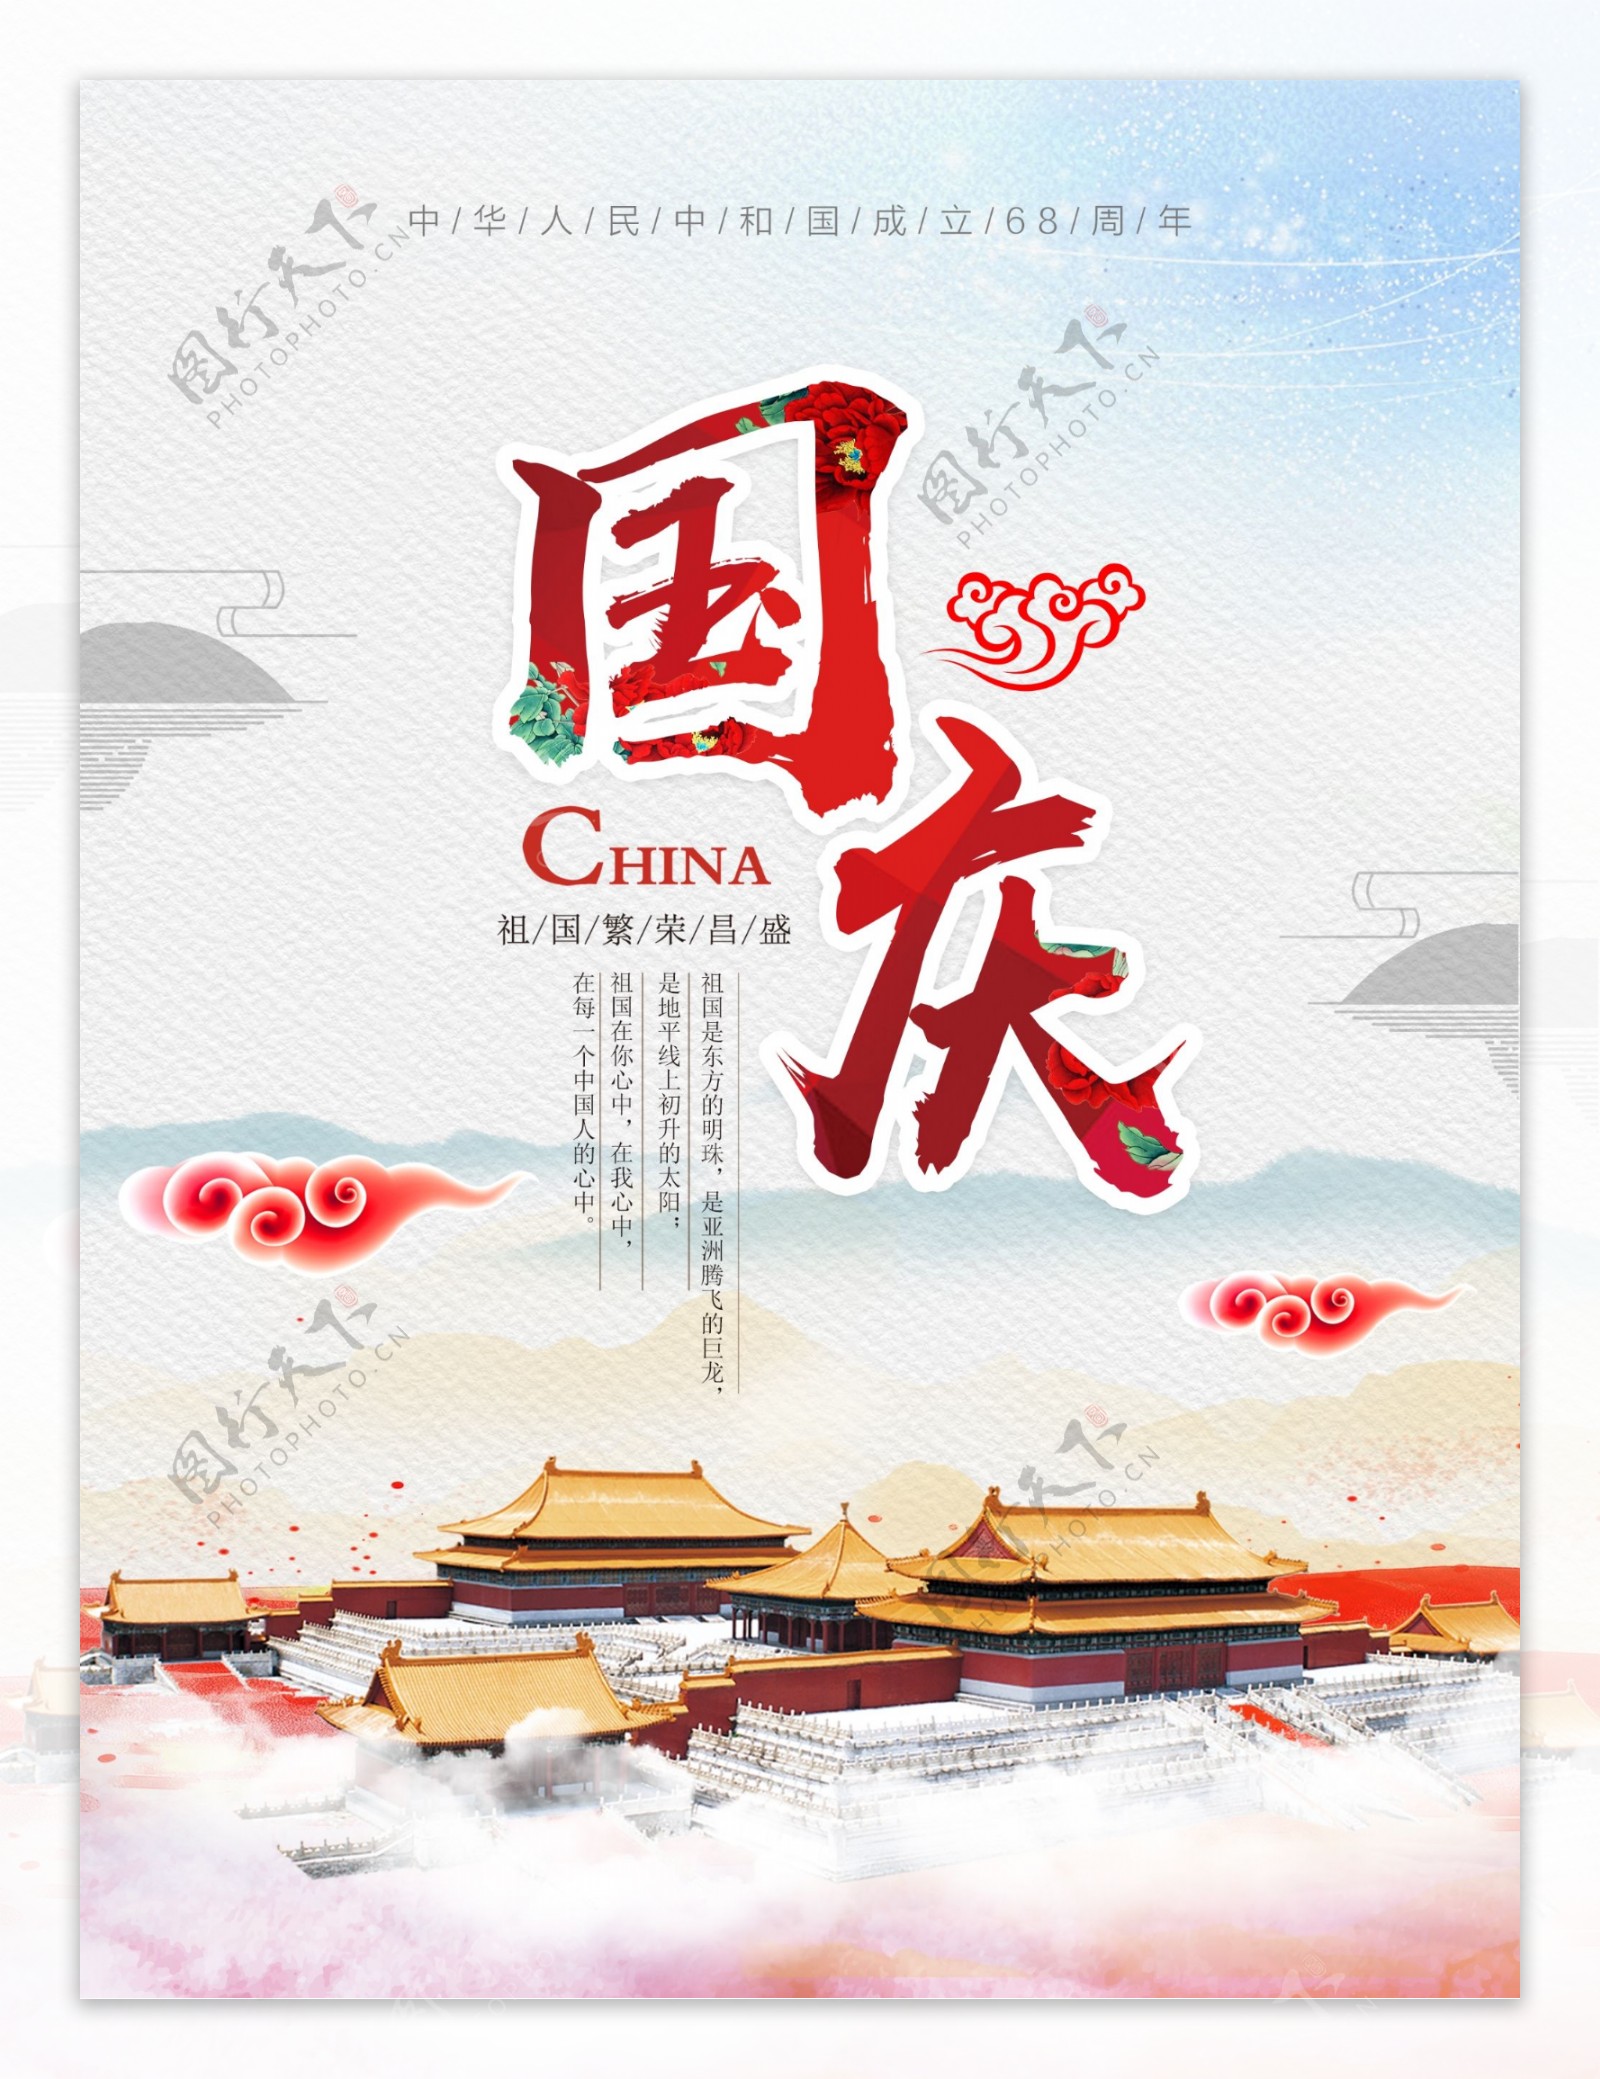 清新简约国庆节节日宣传海报设计